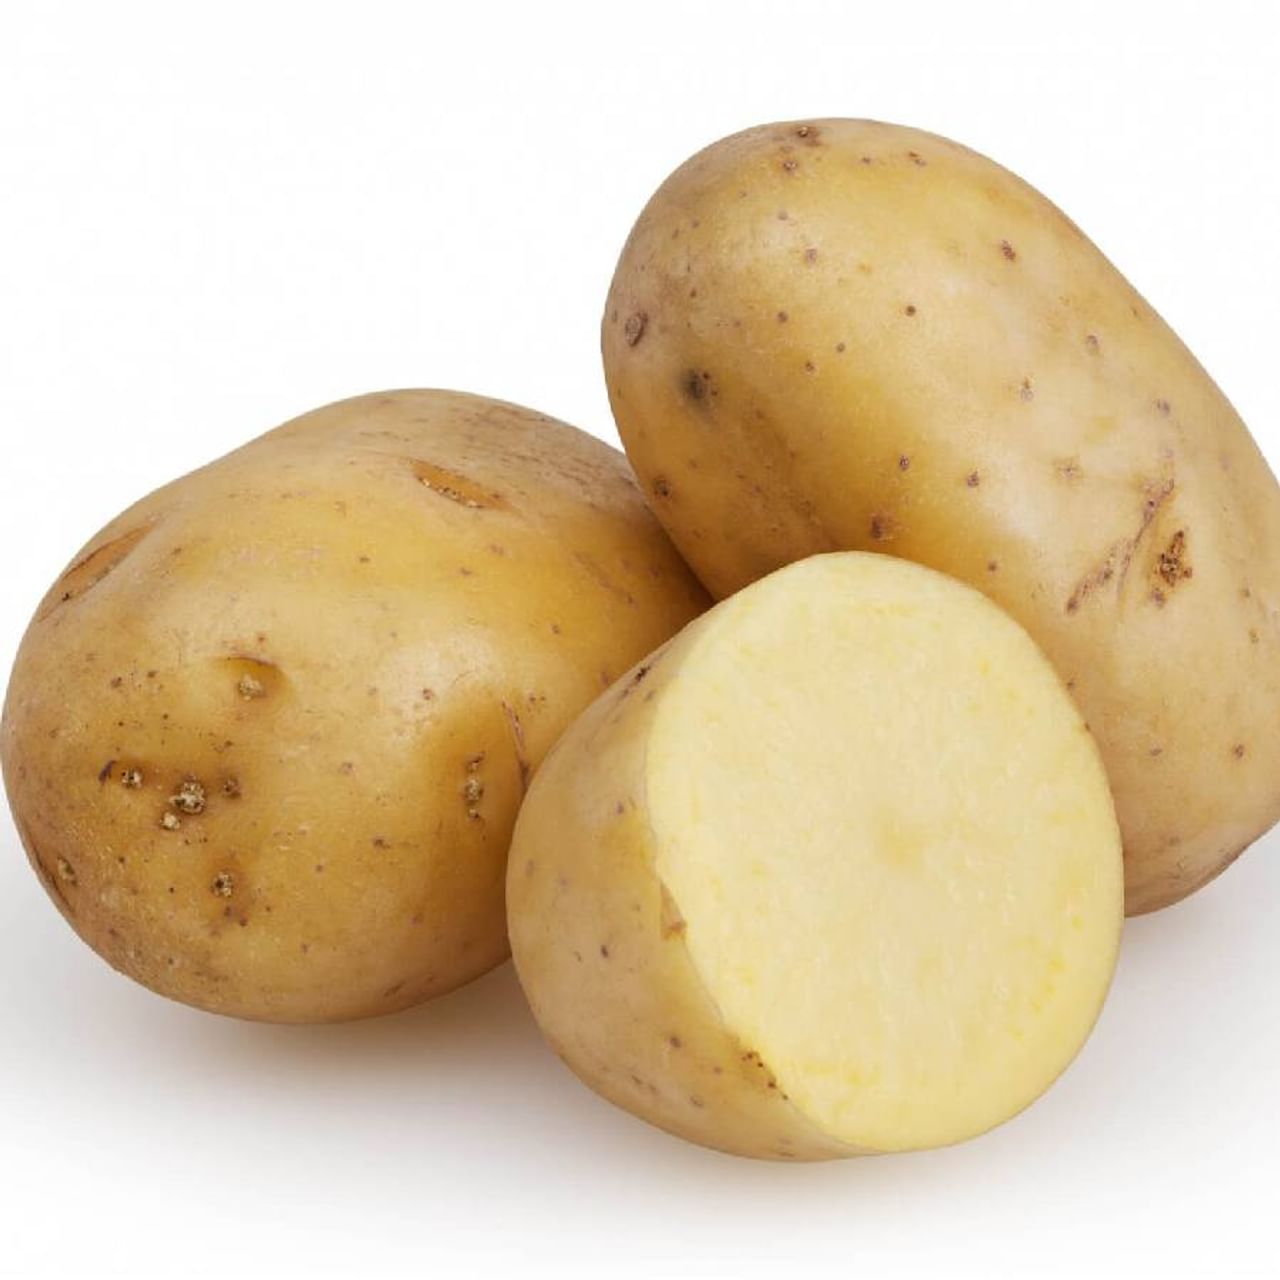 घामापासून आराम मिळवण्यासाठी तुम्ही बटाट्याचा वापर करू शकता. शरीराच्या ज्या भागात तुम्हाला खूप घाम येतो त्या भागावर बटाट्याचे तुकडे चोळा.